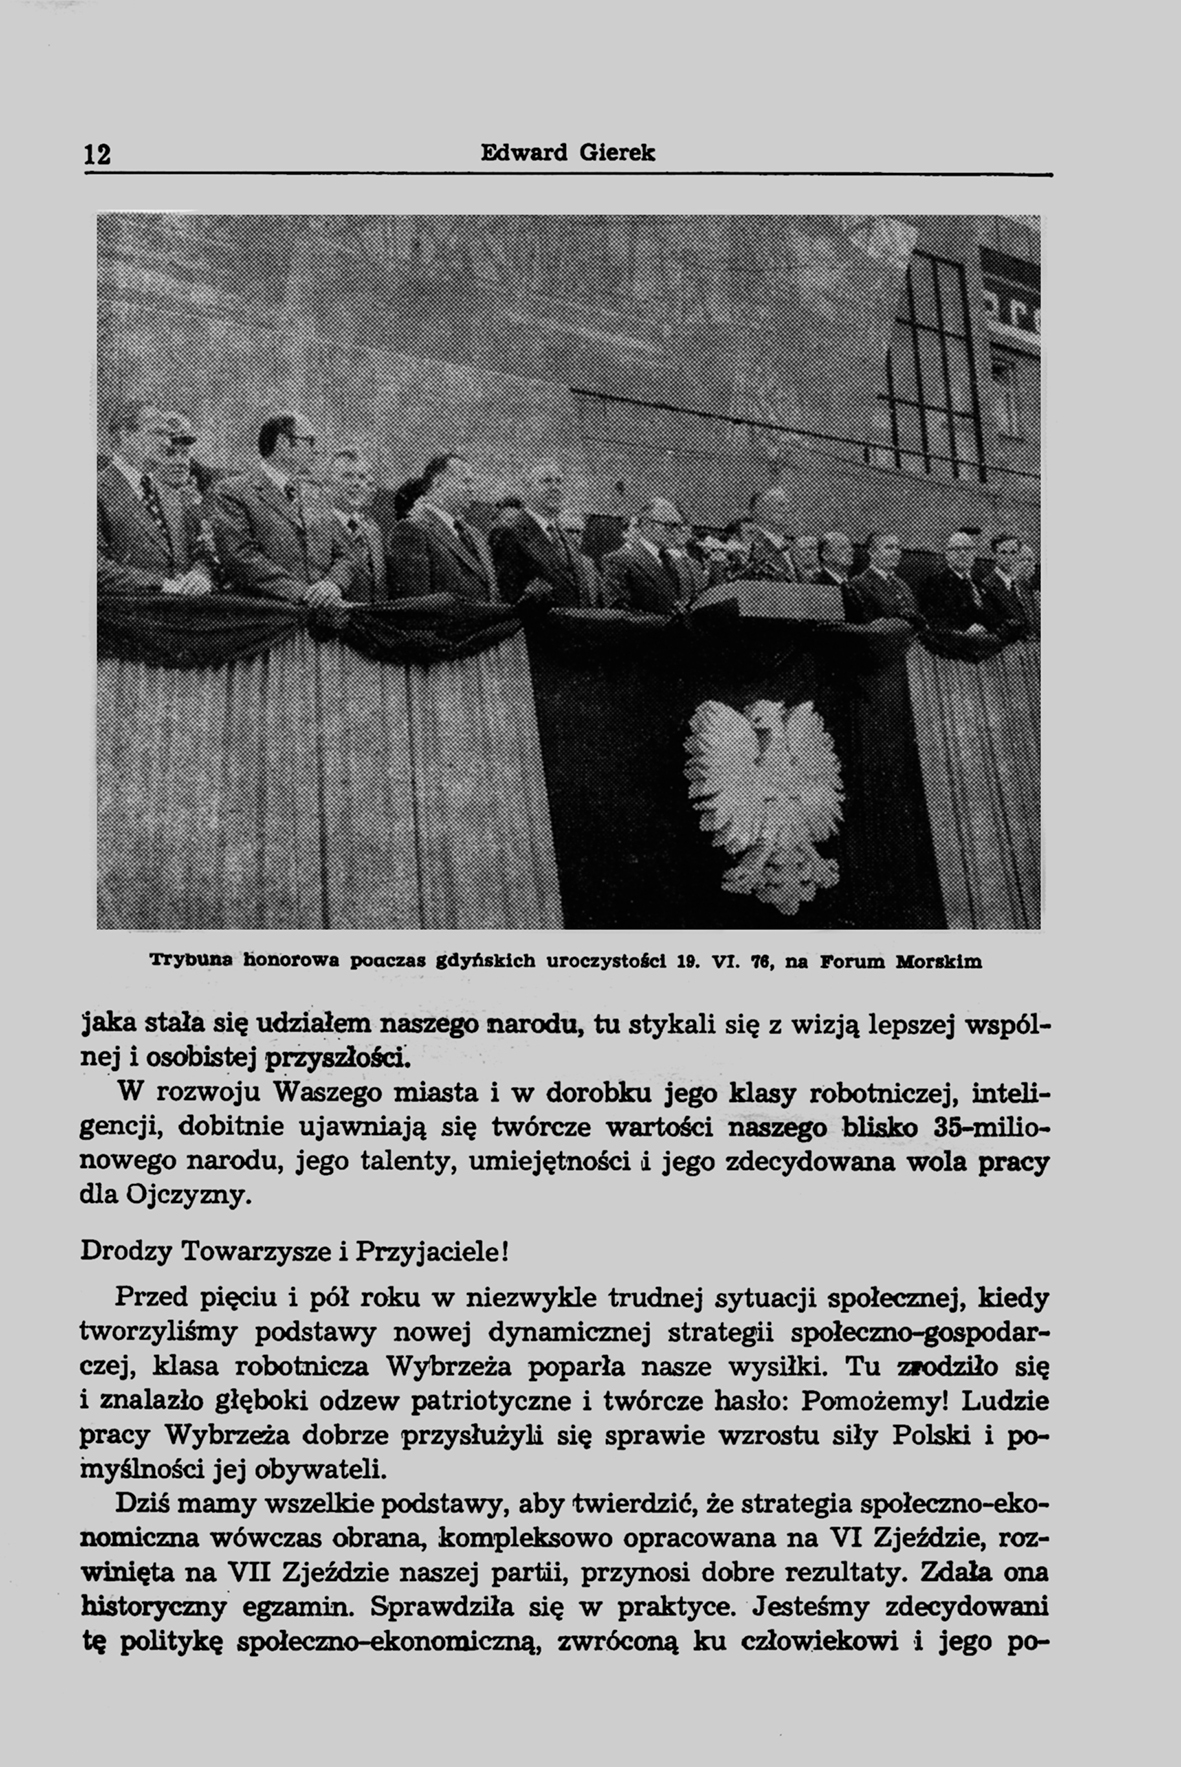 Przemówienie wygłoszone w Gdyni 19 czerwca 1976 r.